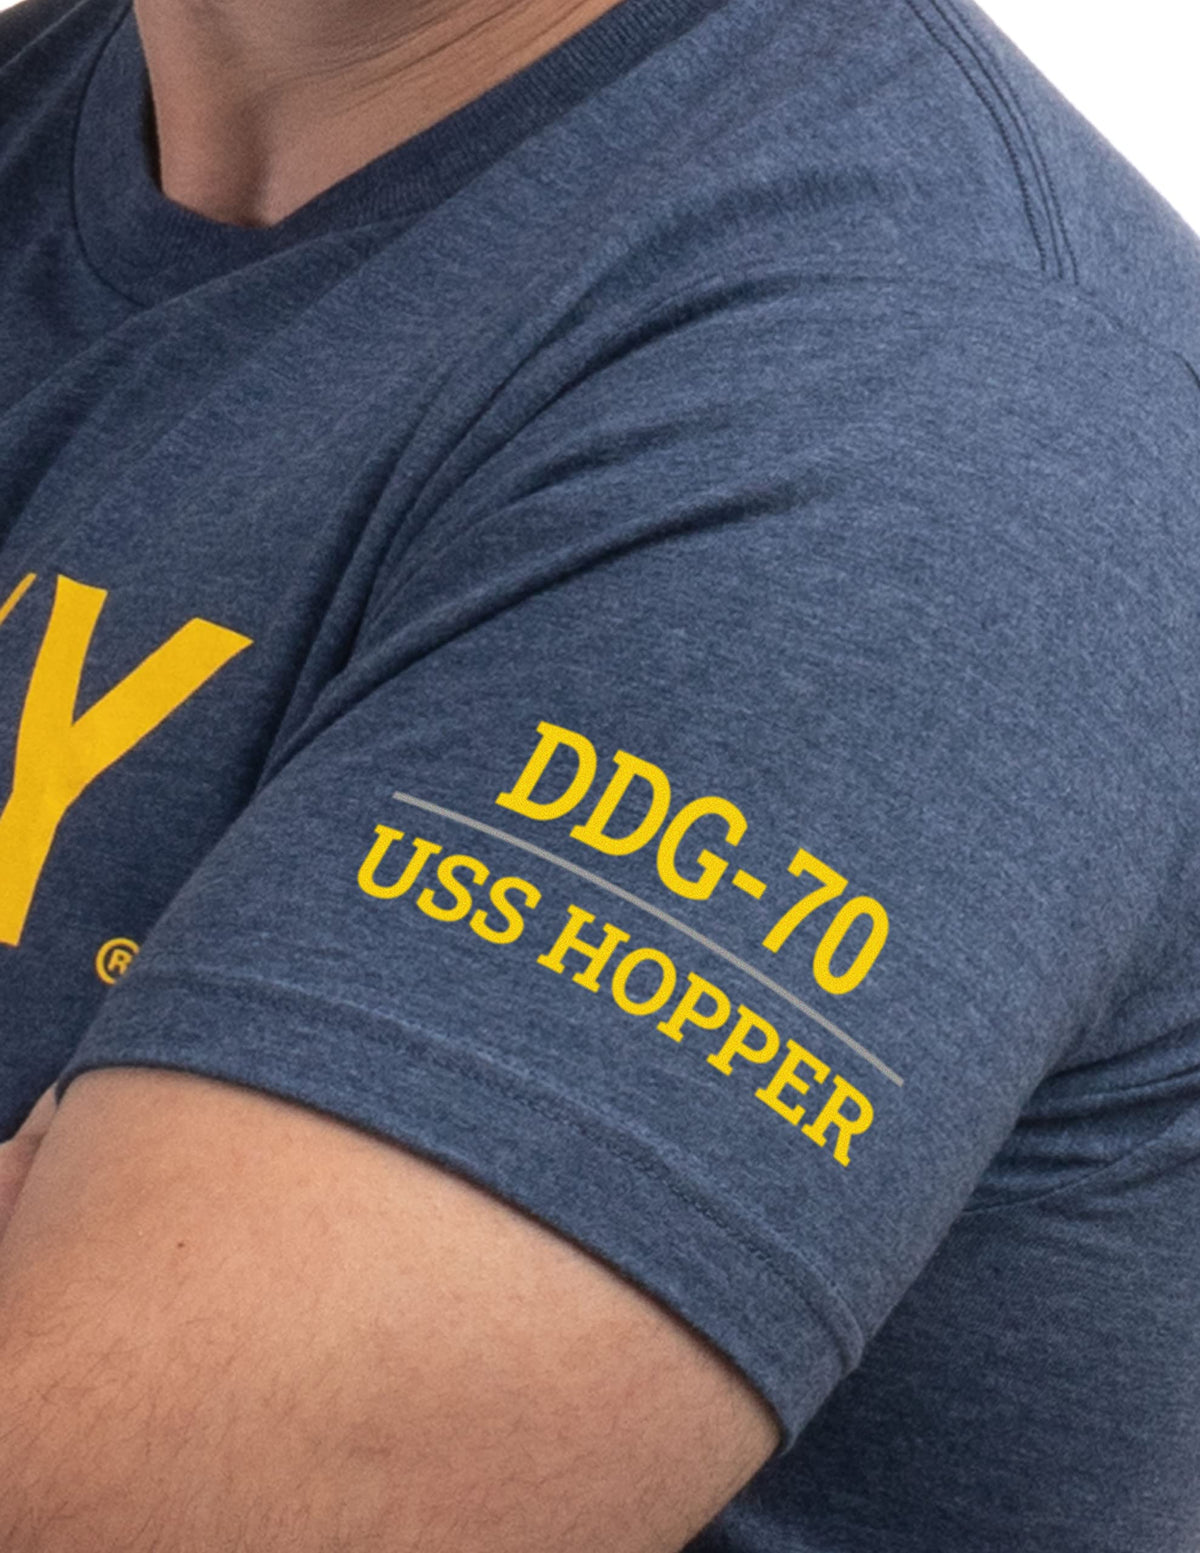 USS Hopper, DDG-70 | U.S. Navy Sailor Veteran USN United States Naval T-shirt for Men Women